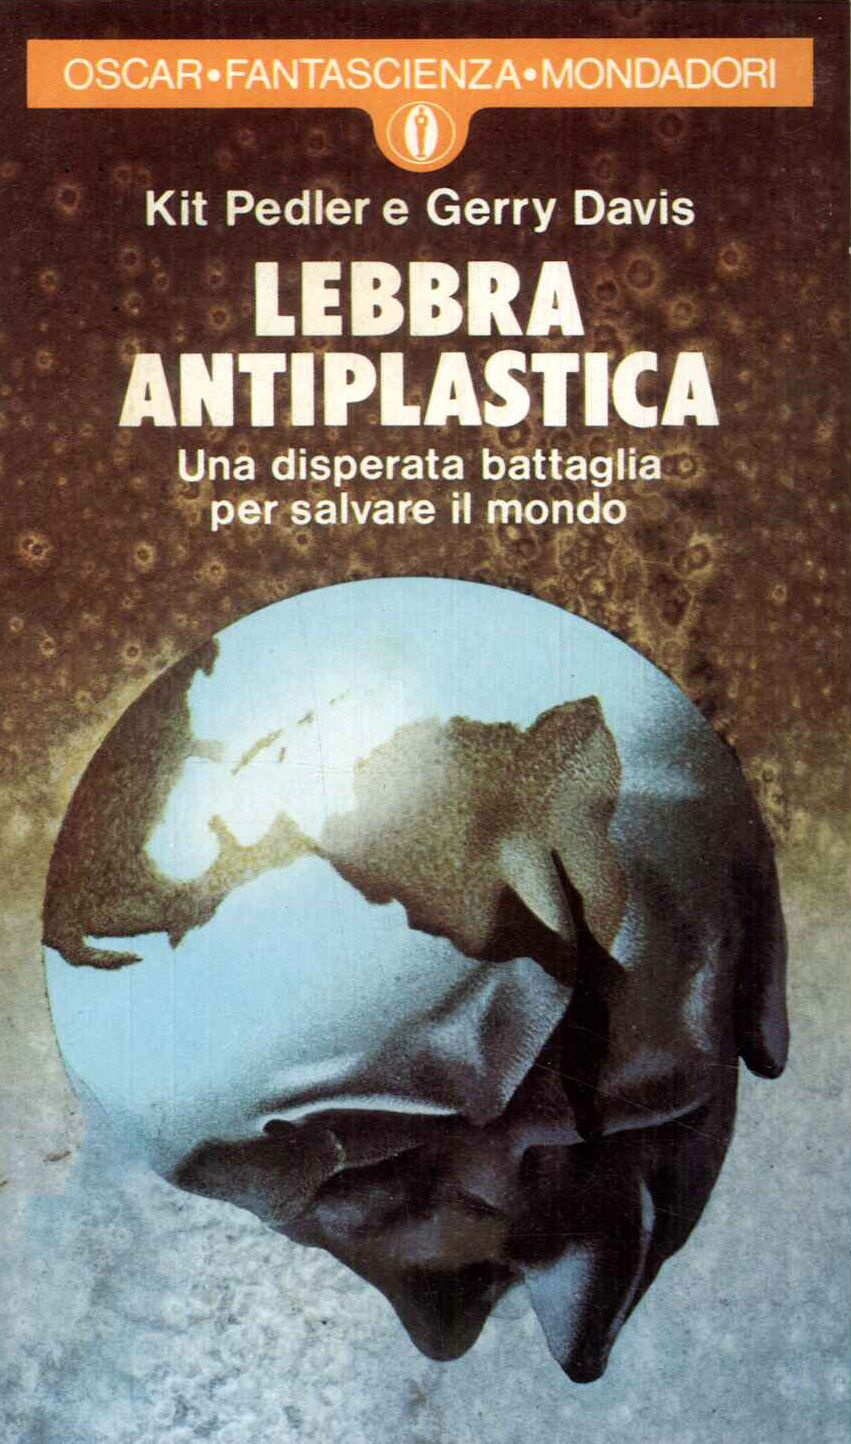 Lebbra antiplastica- una disperata battaglia per salvare il mondo